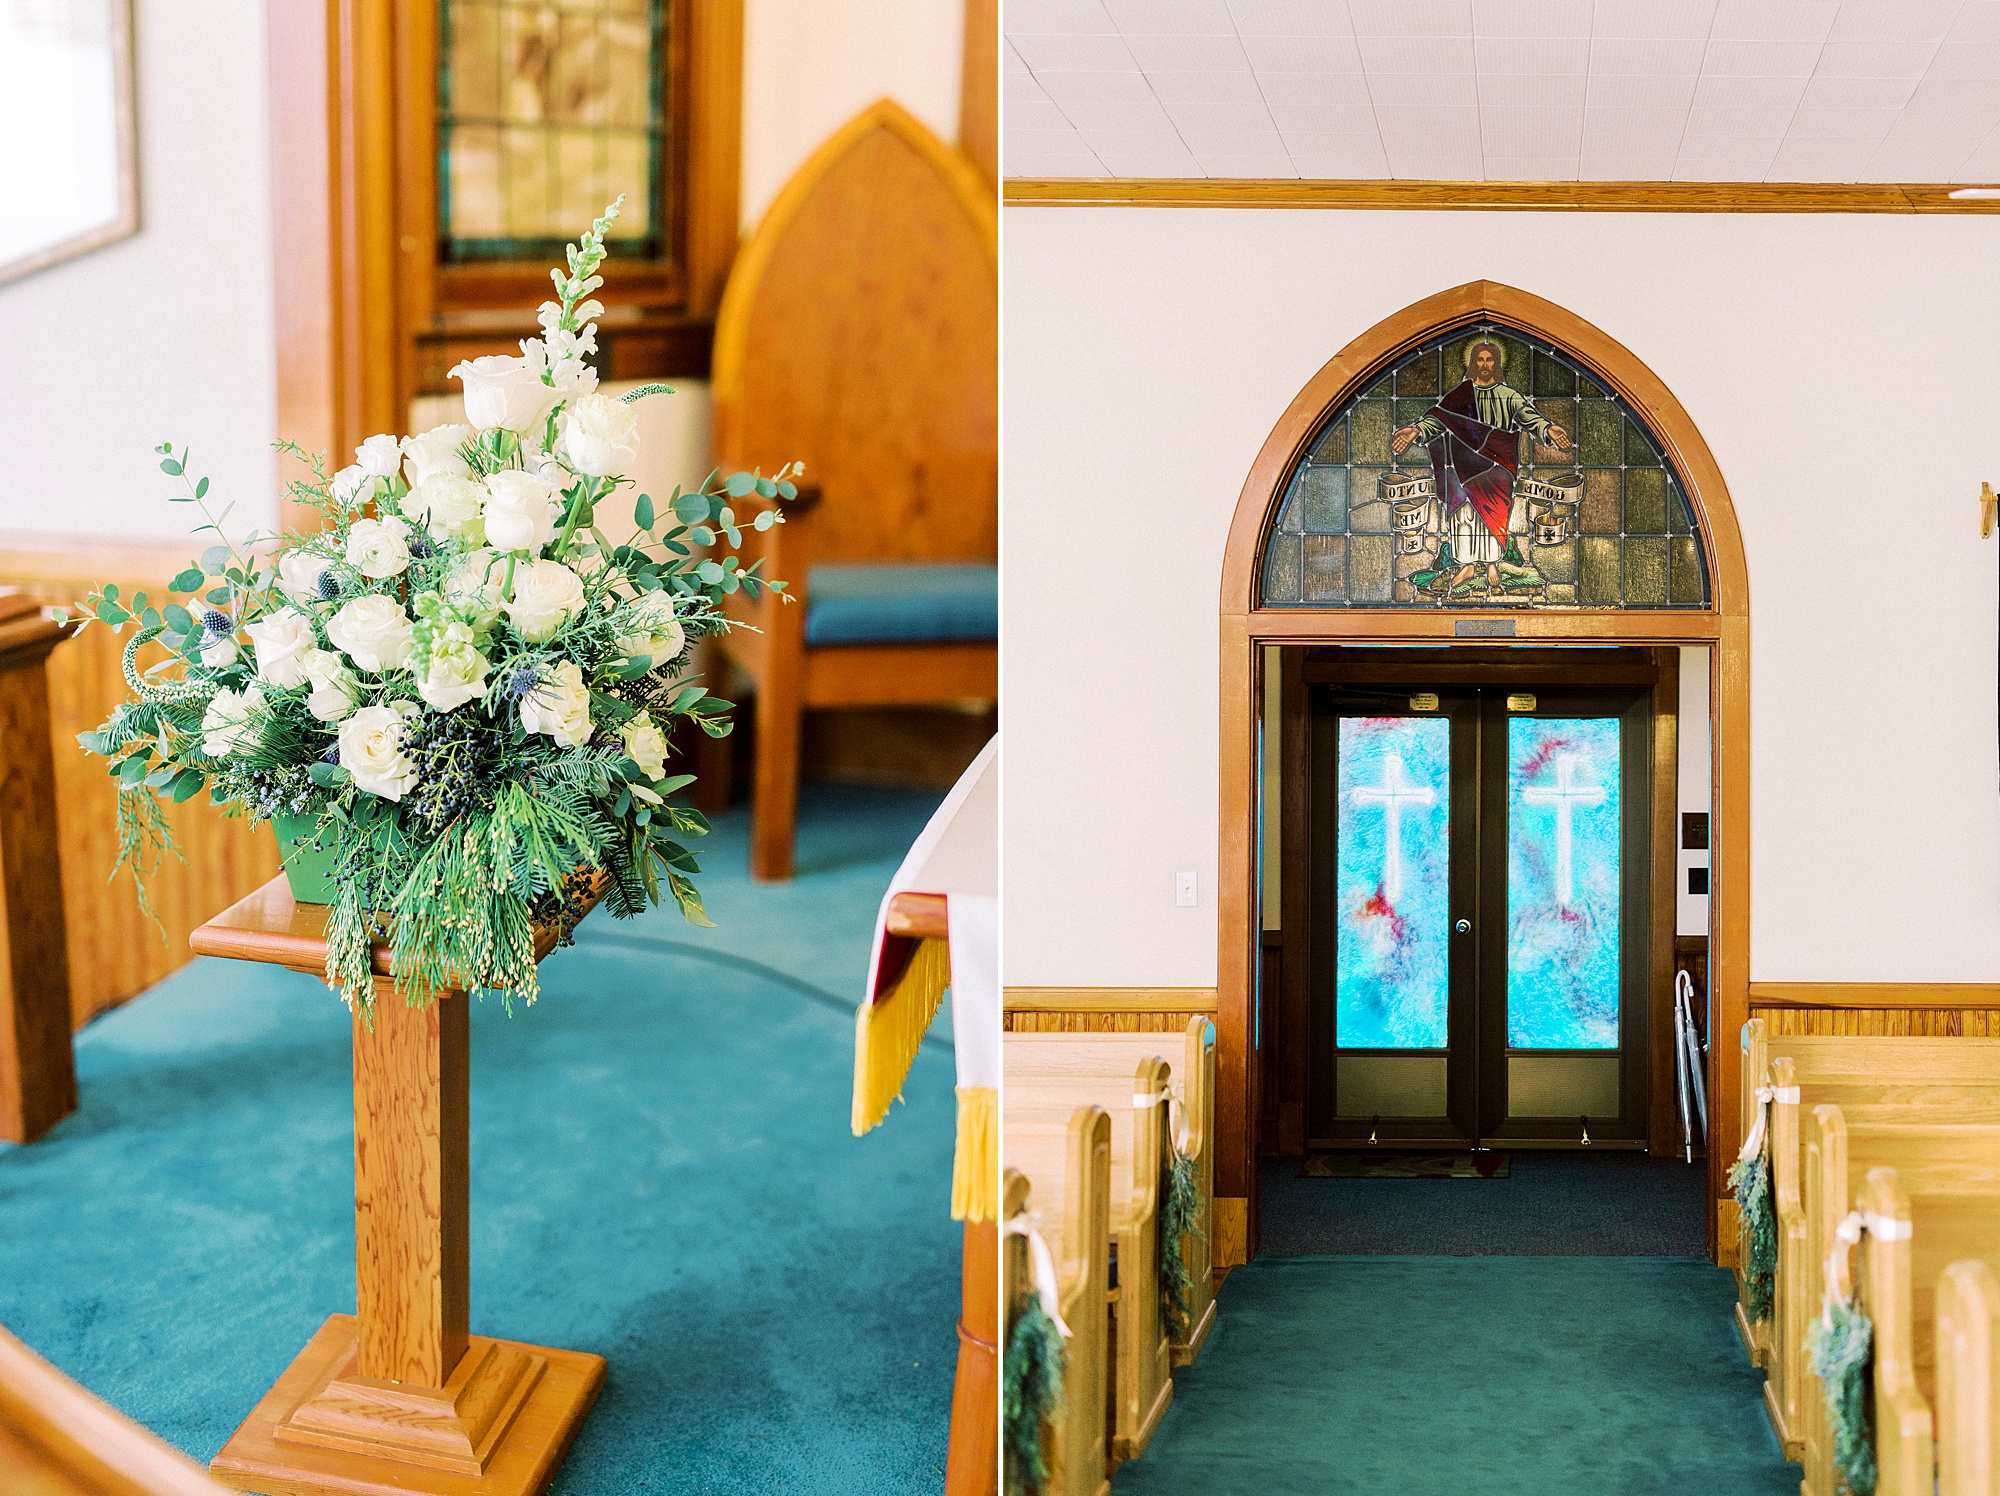 details in Methodist Church for winter wedding